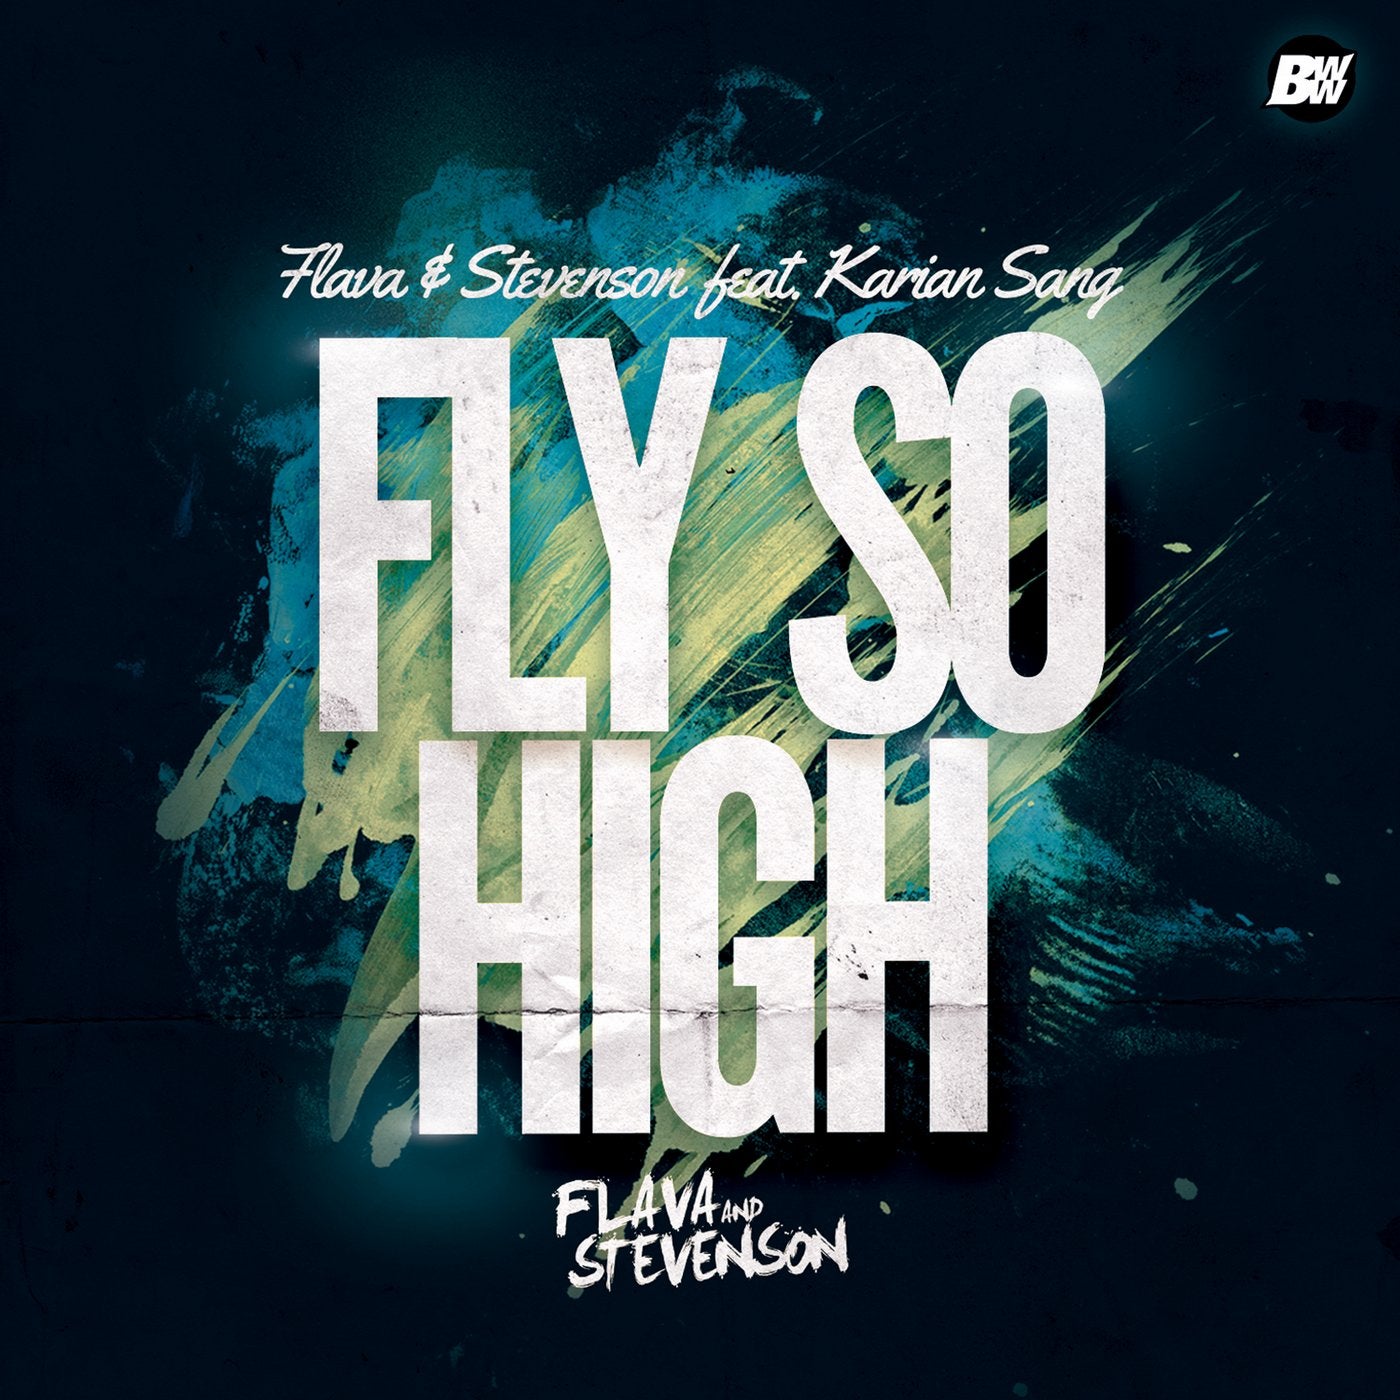 Fly so High